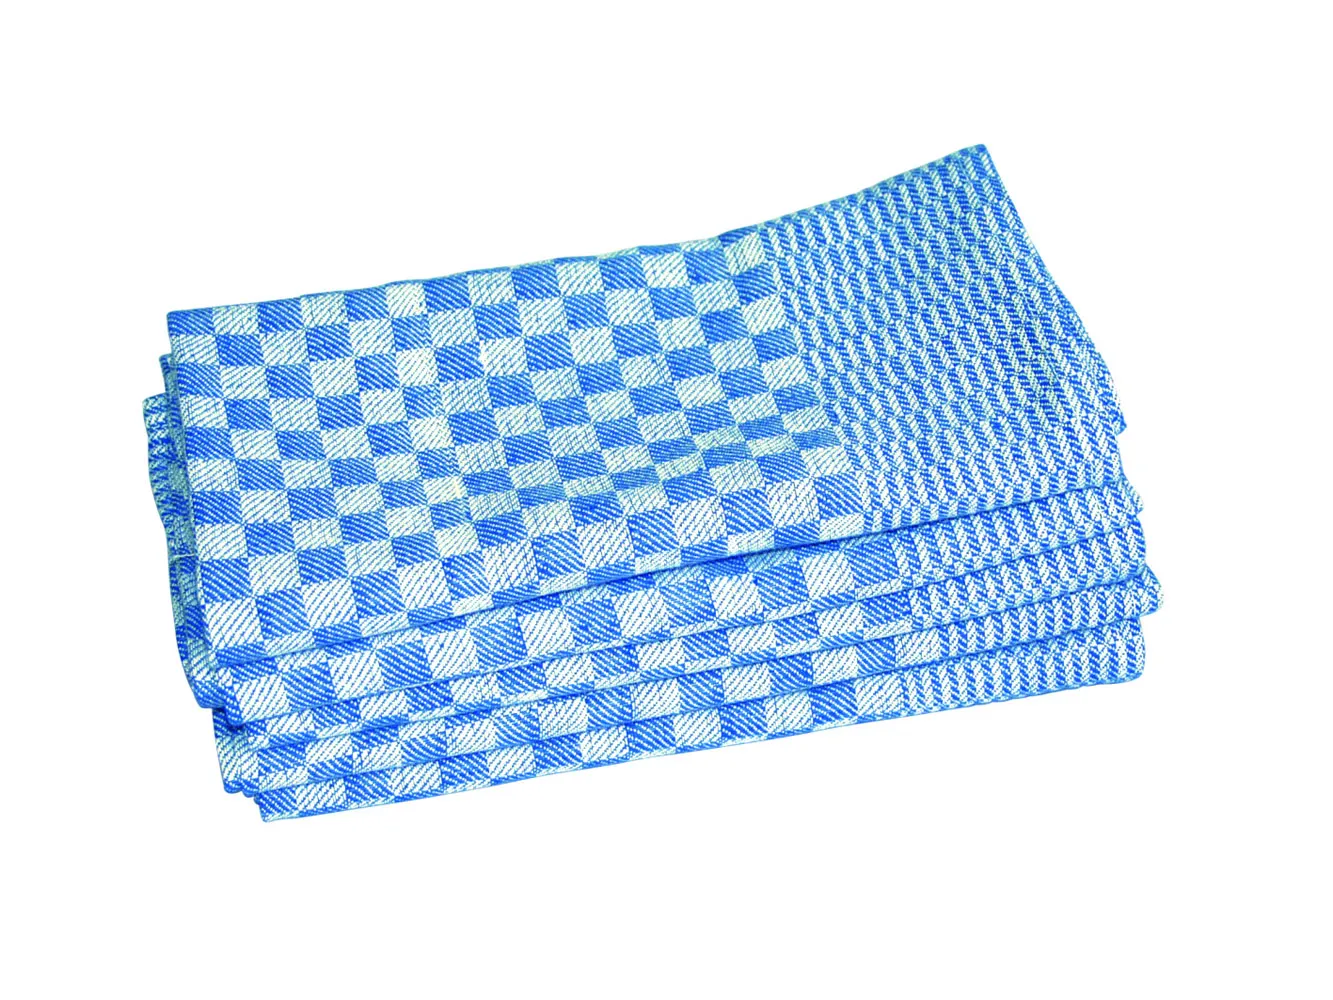 Touchon Grubentuch Leiber 02/36, 50x100 cm, 100% Baumwolle, blau/weiß